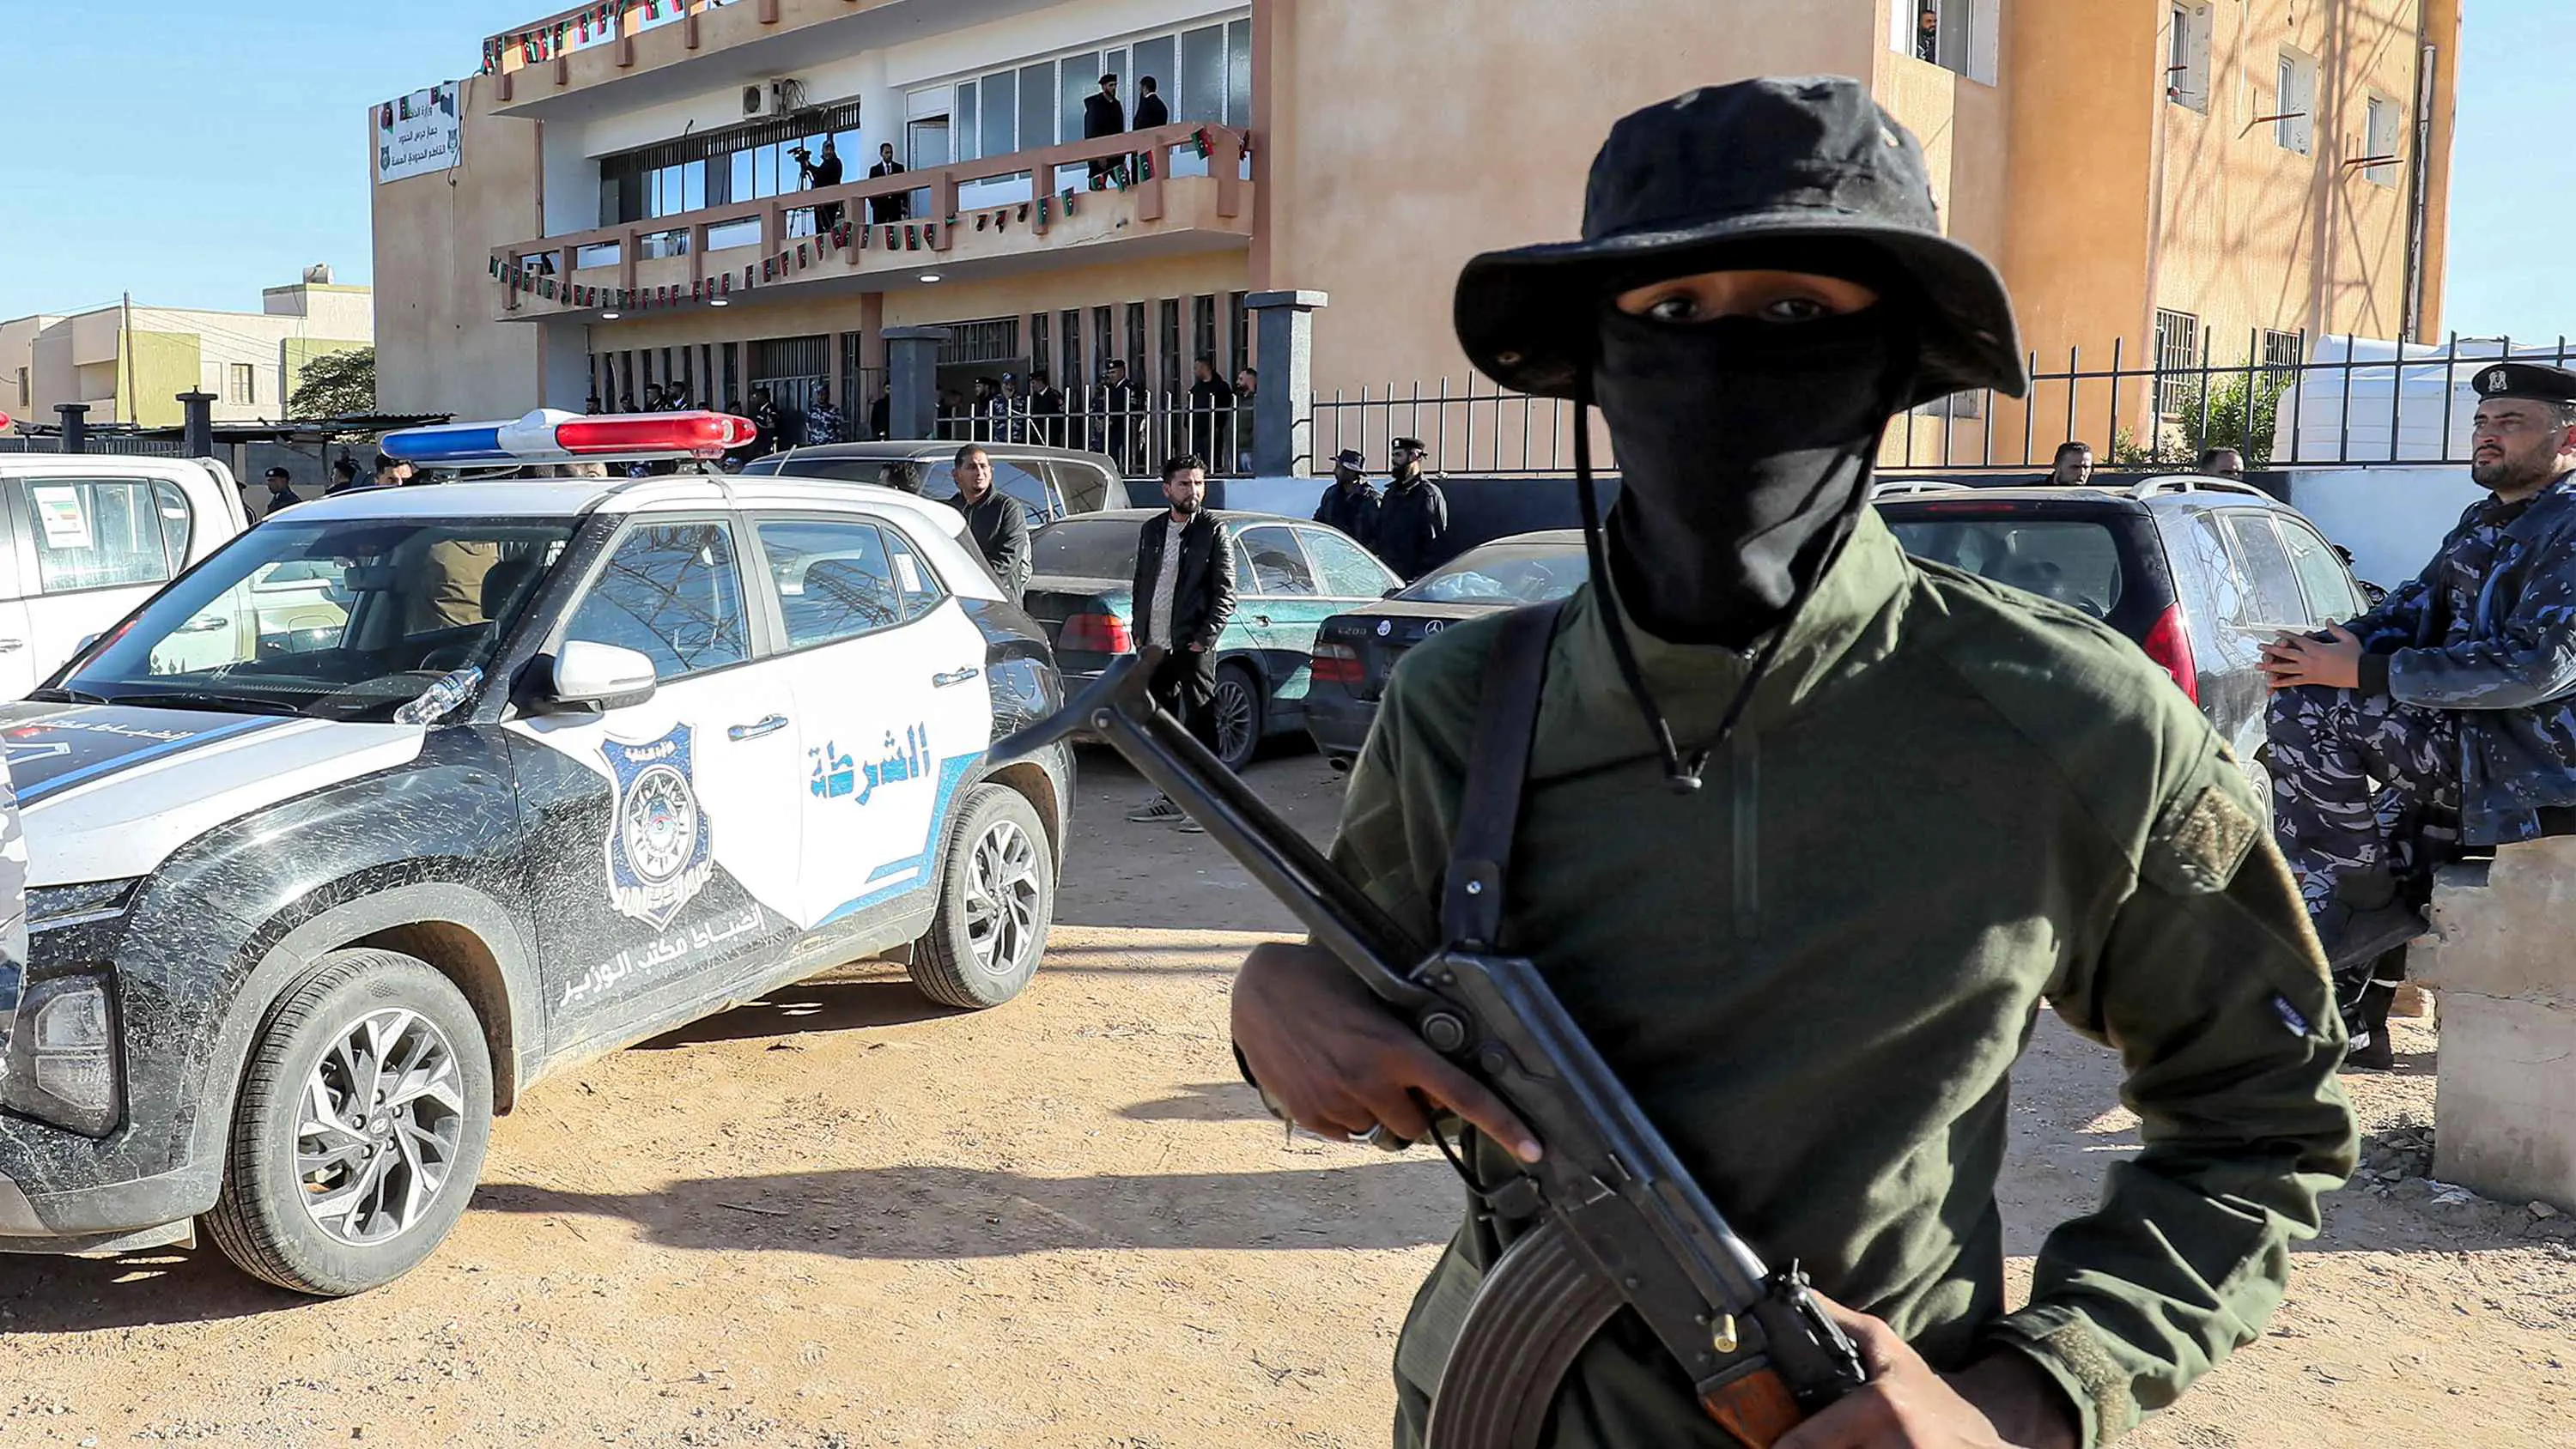 ليبيا.. اشتباكات مسلحة بين ميليشيات في تاجوراء شرقي طرابلس (فيديو)